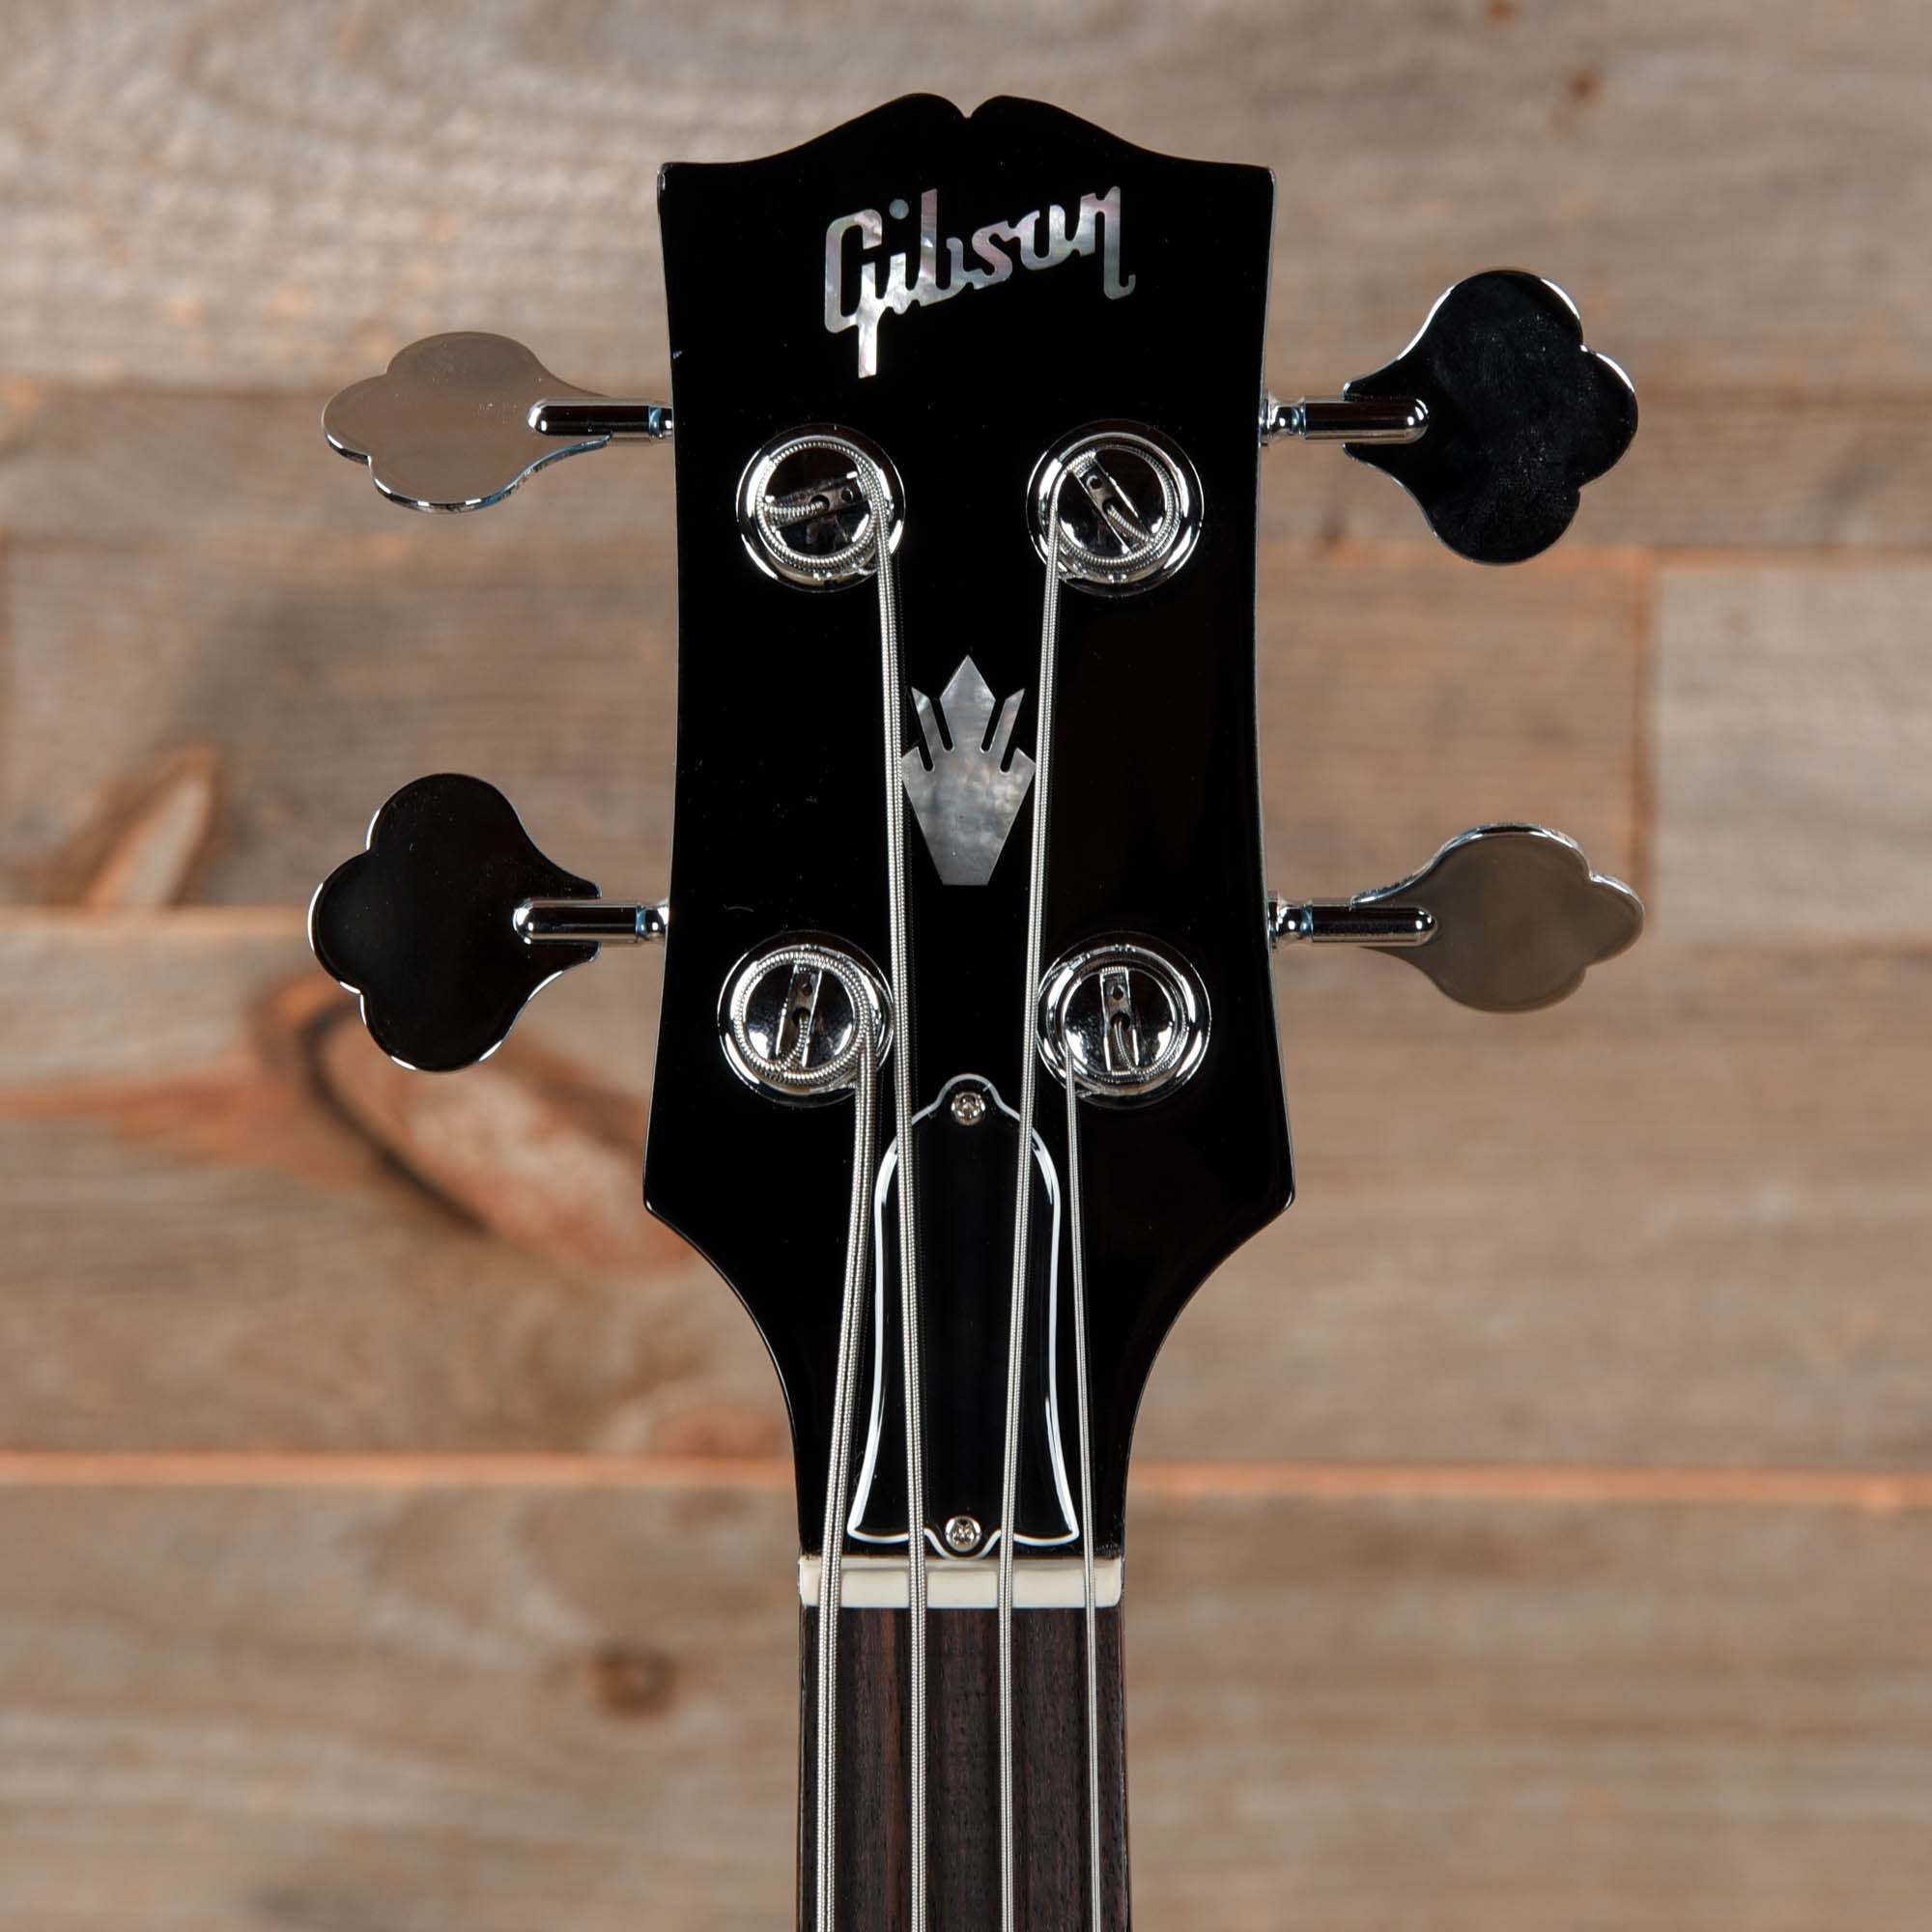 Gibson Modern SG Standard Bass Pelham Blue w/Tortoise Pickguard